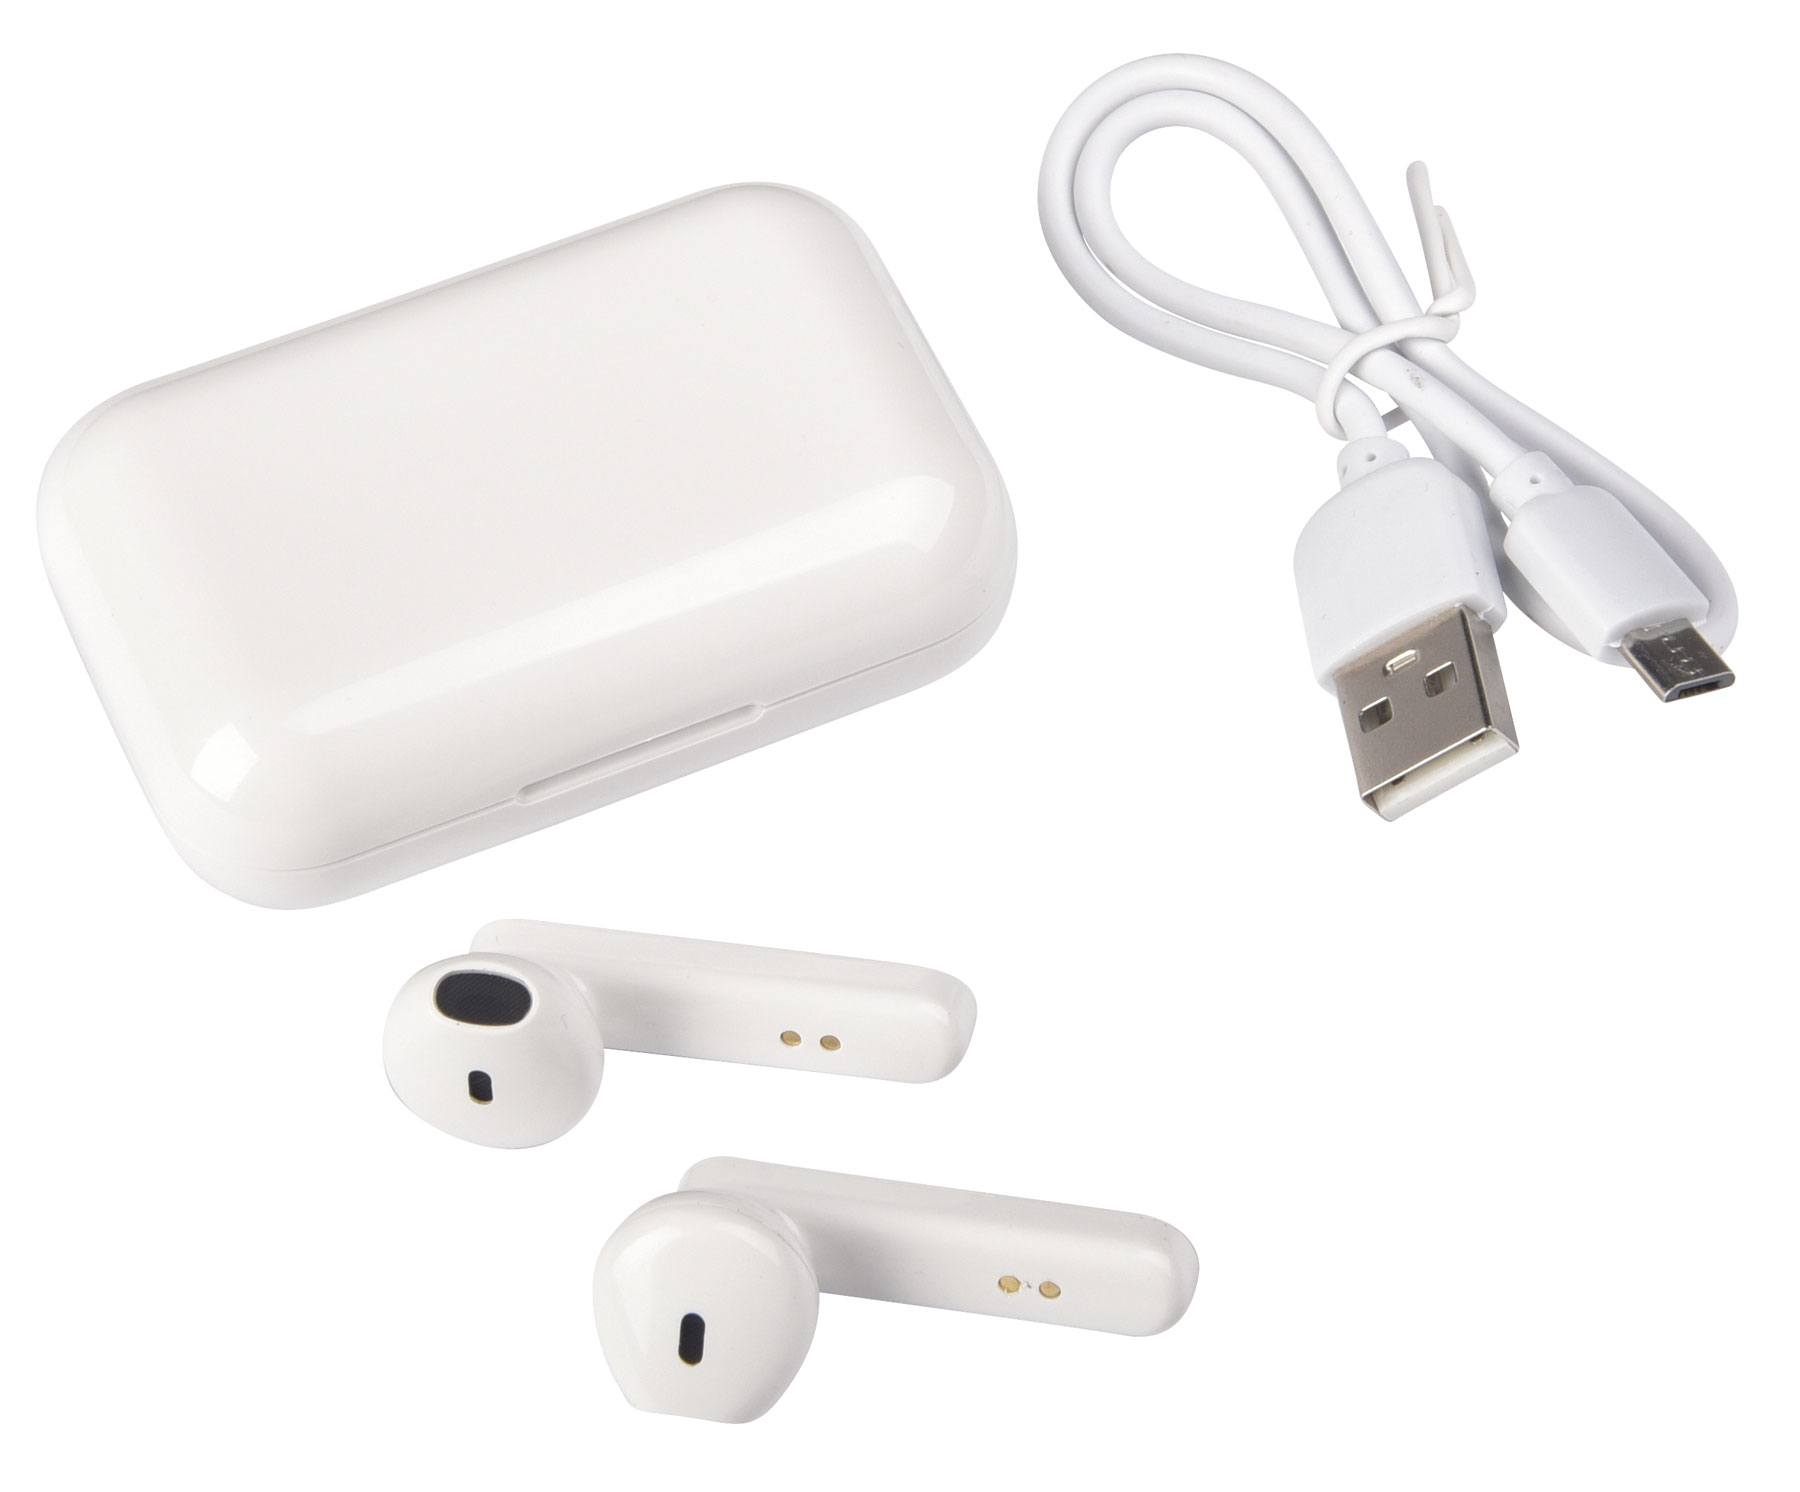 Bezdrátová sluchátka do uší TWINS: vč. funkce hlasitého odposlechu, dosah: cca. 10 m, tlačítko pro příjem a ukončení hovoru i funkce stop vpřed a vzad, možný stereo i mono provoz, vč. USB nabíjecí kabel s Micro-USB konektorem (délka cca 20 cm), modrá LED kontrolka nabíjení, úložný box je zároveň nabíjecí stanicí, kapacita sluchátek: 30 mAh, nabíjecí stanice: 300 mAh  - bílá - foto